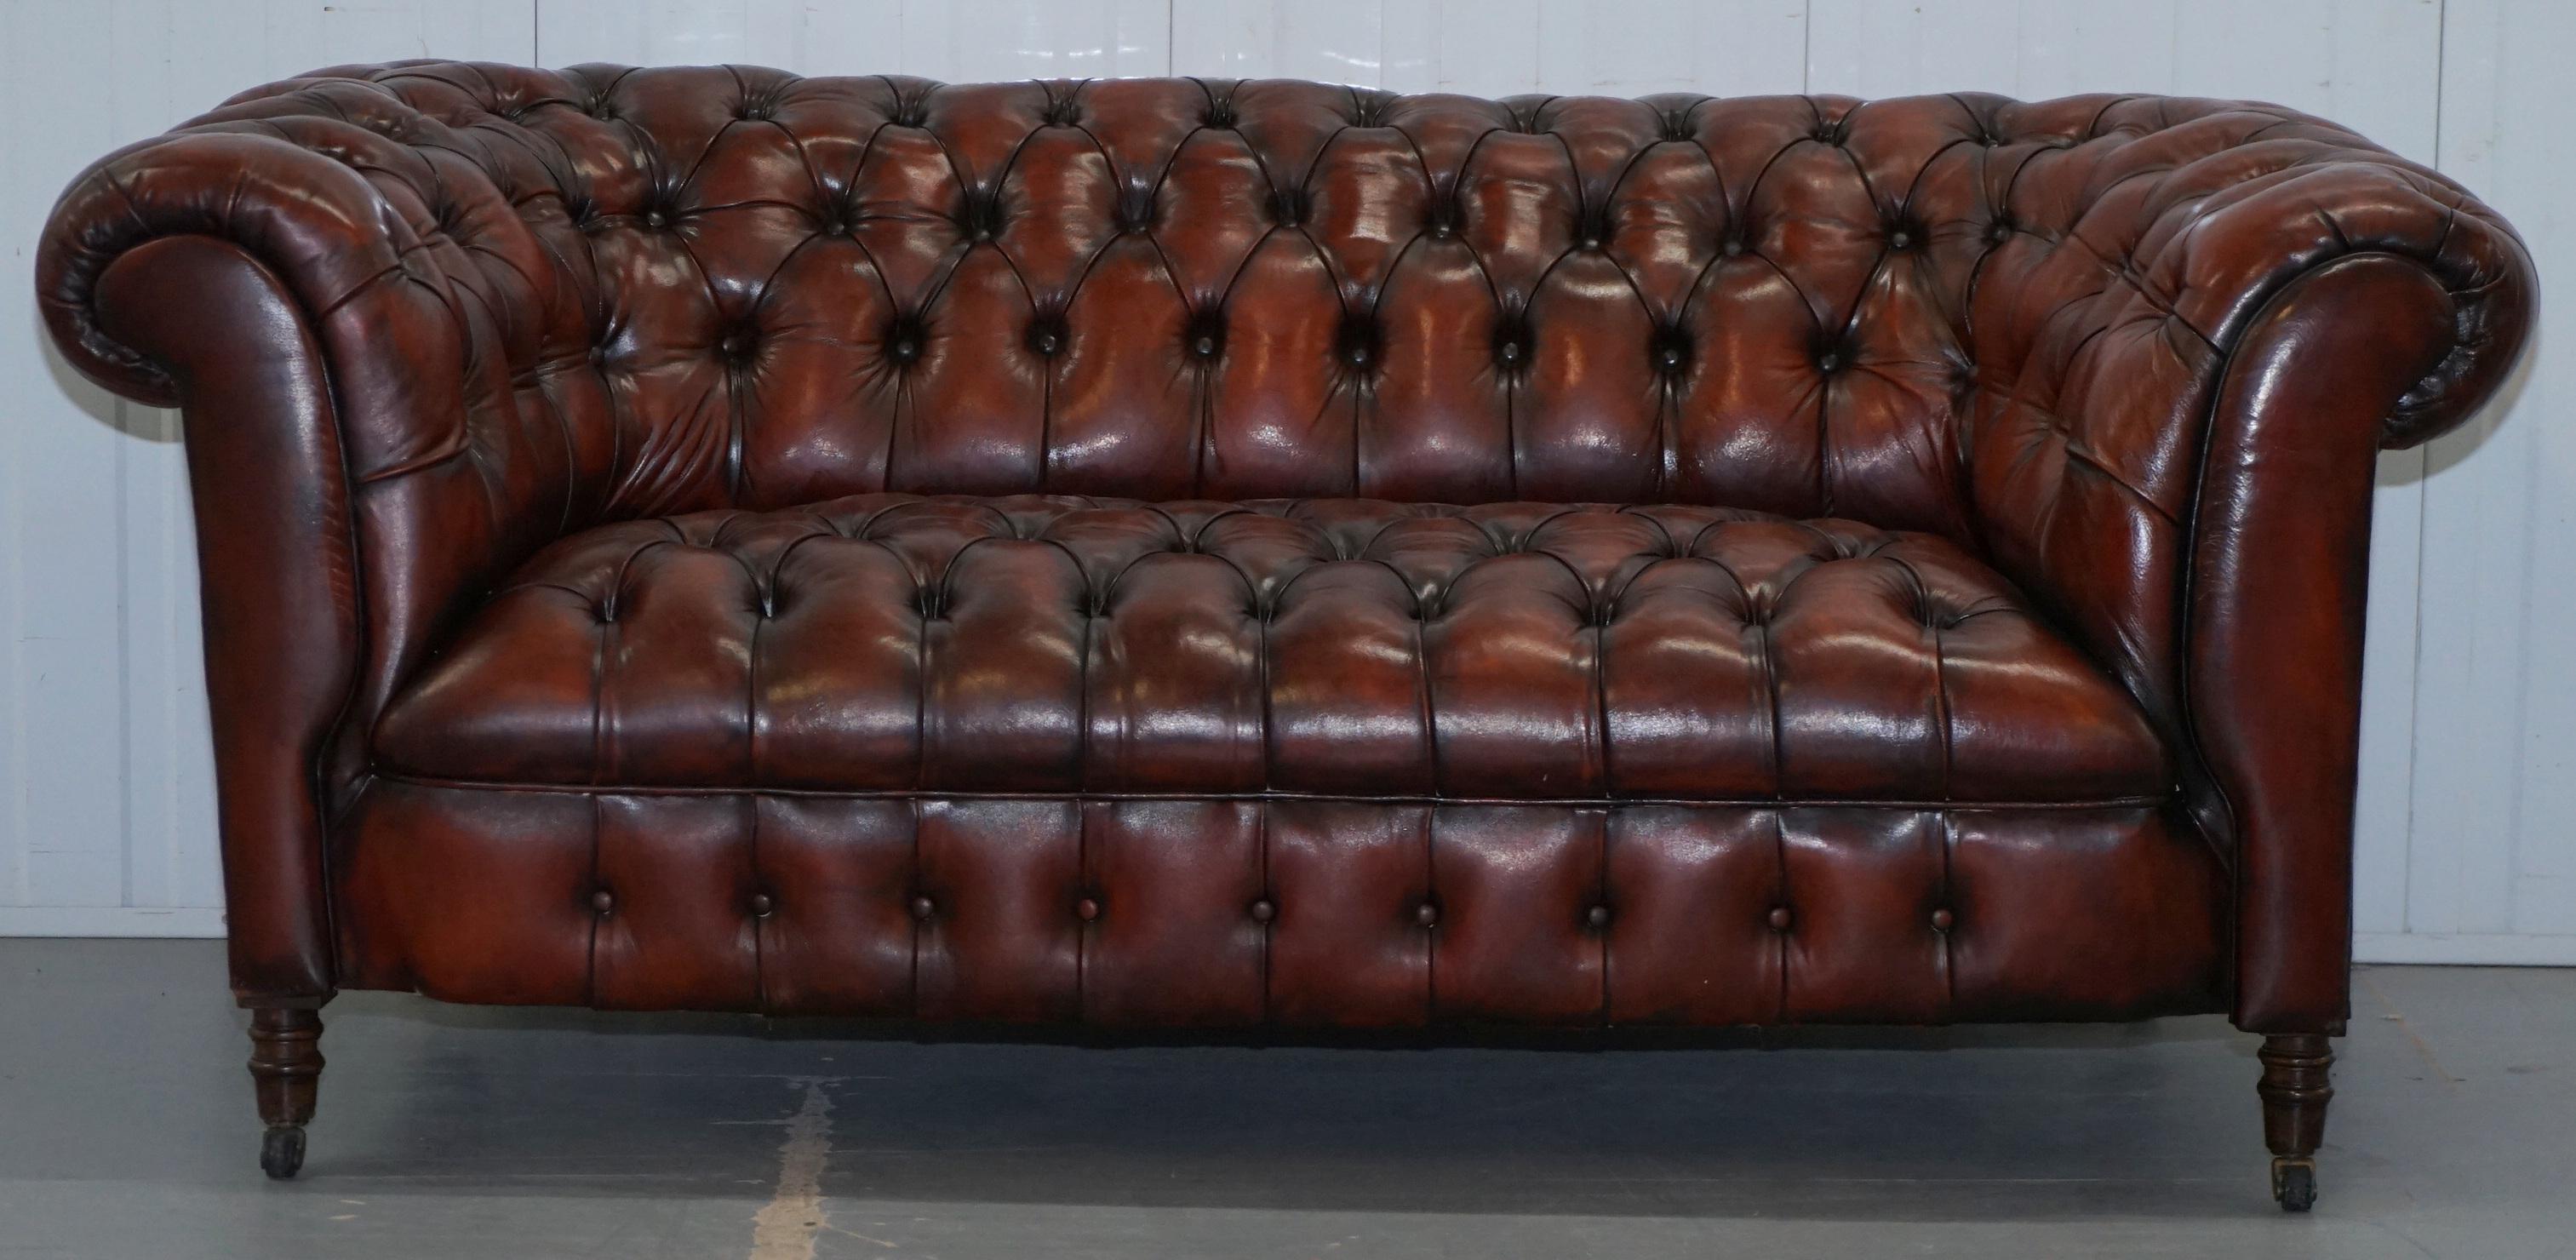 Wir freuen uns, dieses atemberaubende, vollständig restaurierte viktorianische, um 1880 handgefärbte Chesterfield-Zweisitzer-Sofa mit vollständig geknöpftem Sockel zum Verkauf anzubieten
Ein sehr gut aussehendes Stück, das in dieser geringen Breite